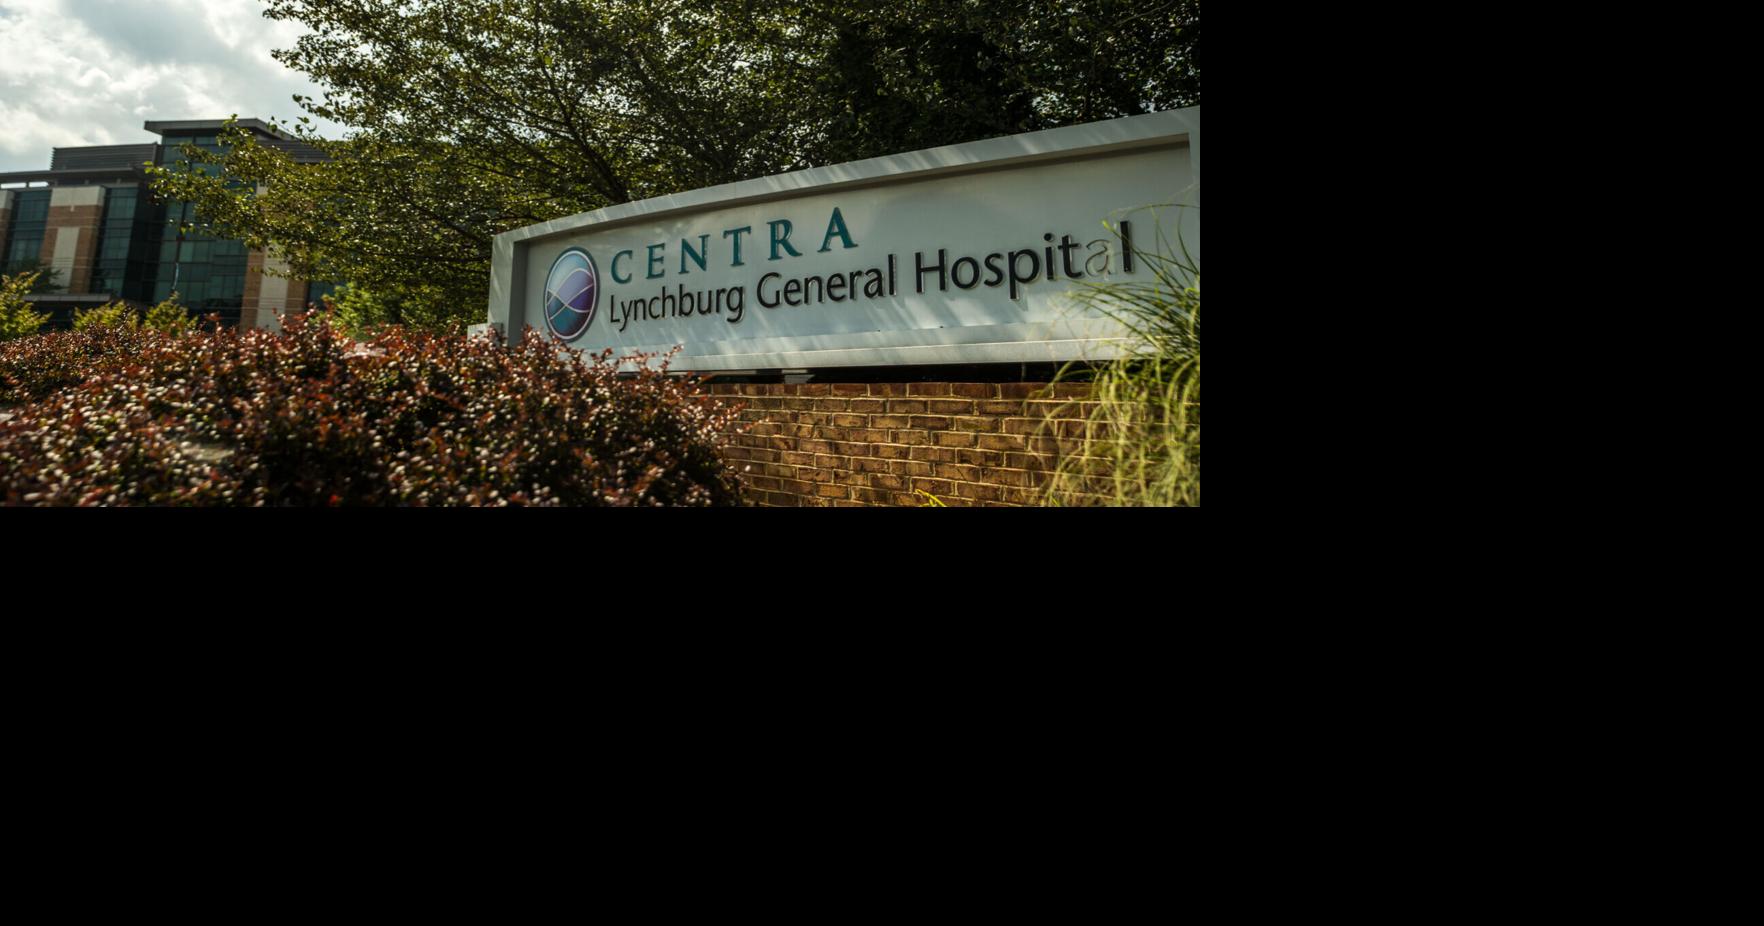 Technology Enhances Patient Care in Centra Program